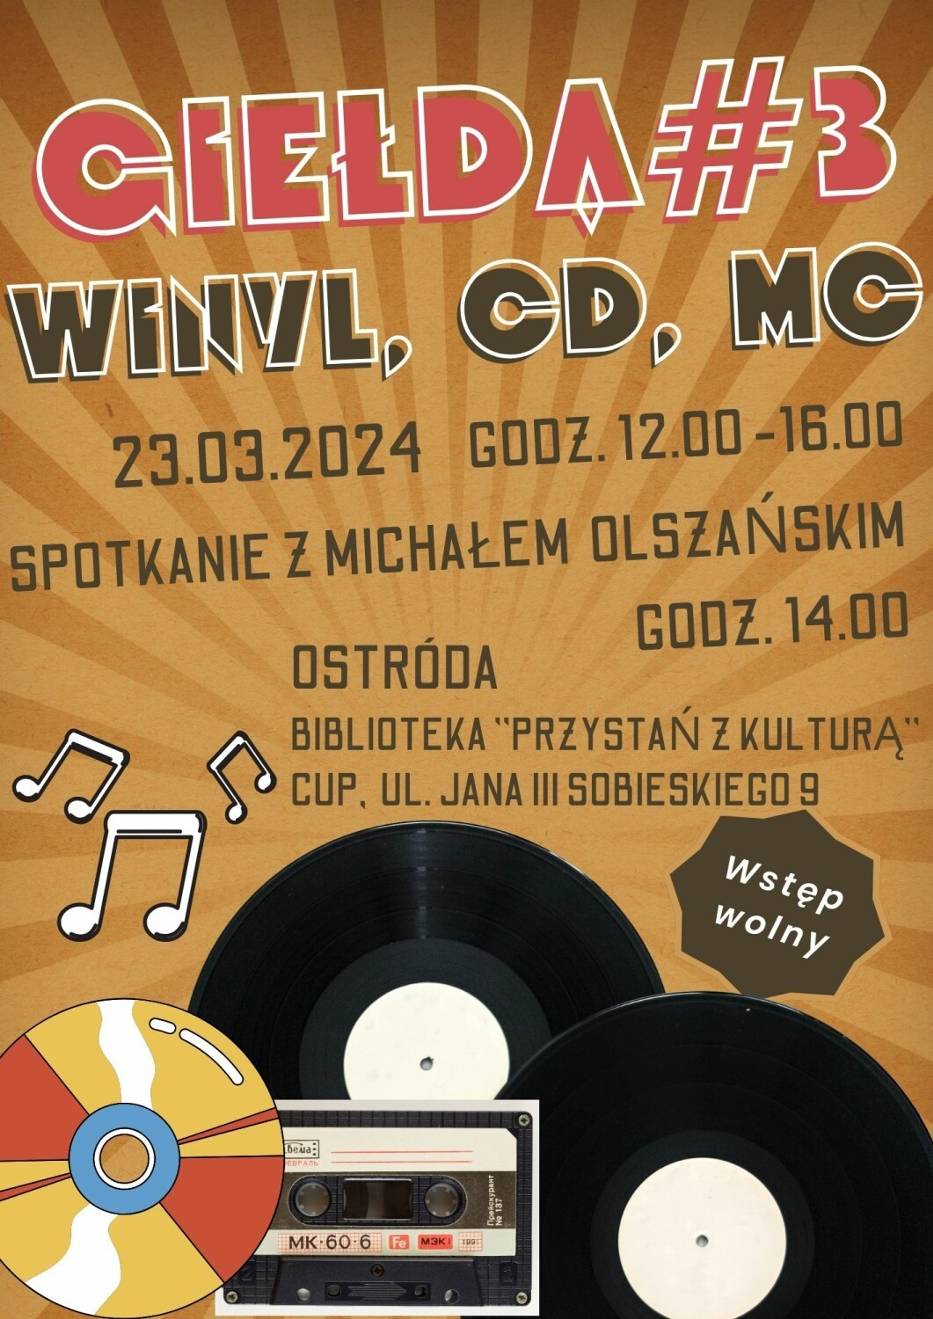 Giełda płyt winylowych/CD/kaset MC#3 w Ostródzie